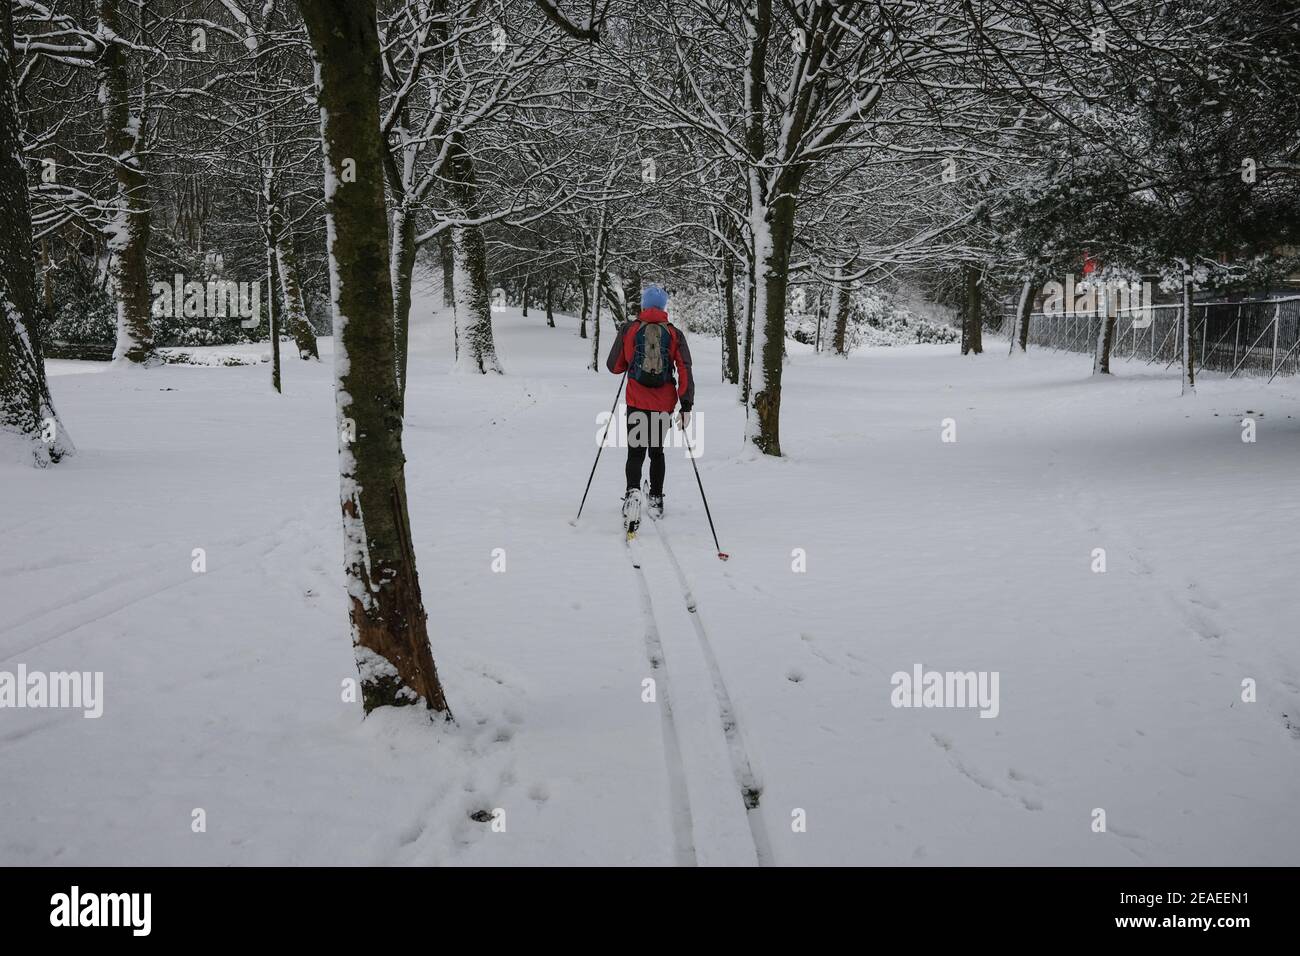 Glasgow, Royaume-Uni, le 9 février 2021. Un homme skine dans Queen's Park, en utilisant la chute de neige lourde pendant la nuit pour son exercice quotidien, pendant le confinement de la pandémie de santé du coronavirus Covid-19 en cours. Crédit photo: Jeremy Sutton-Hibbert/ Alamy Live News. Banque D'Images